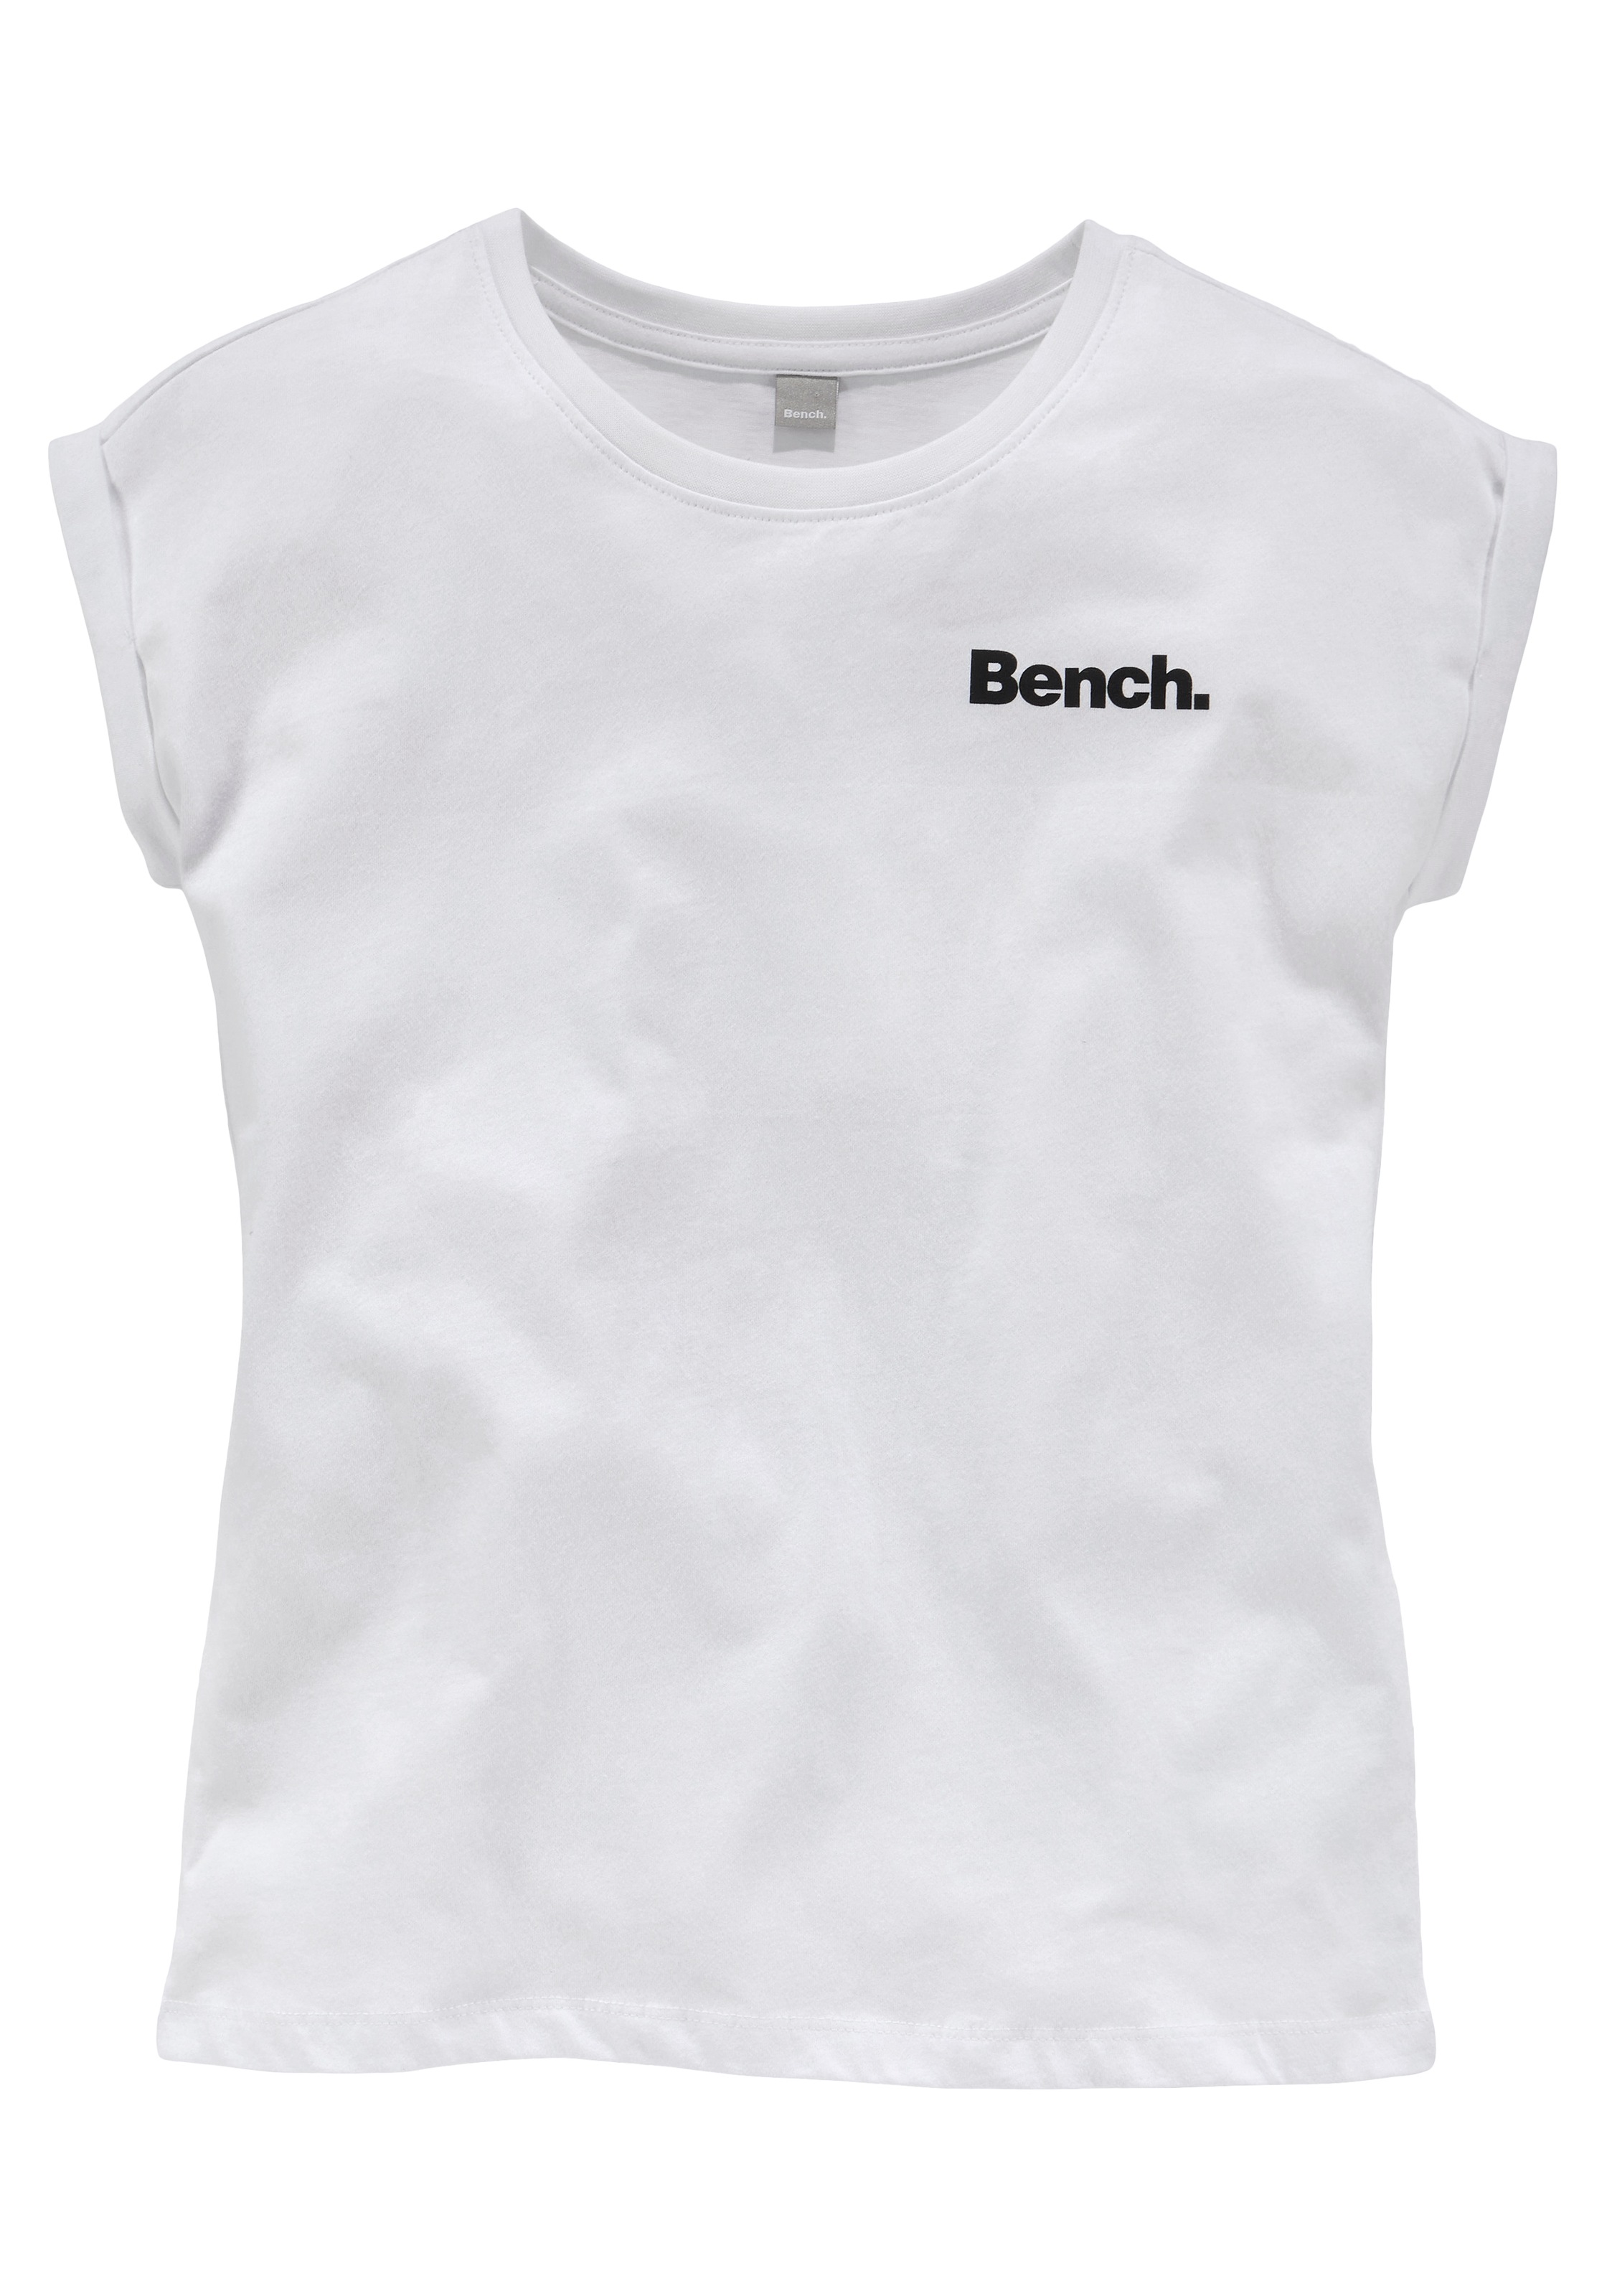 OTTO bei Rückendruck Bench. mit T-Shirt, online Logo